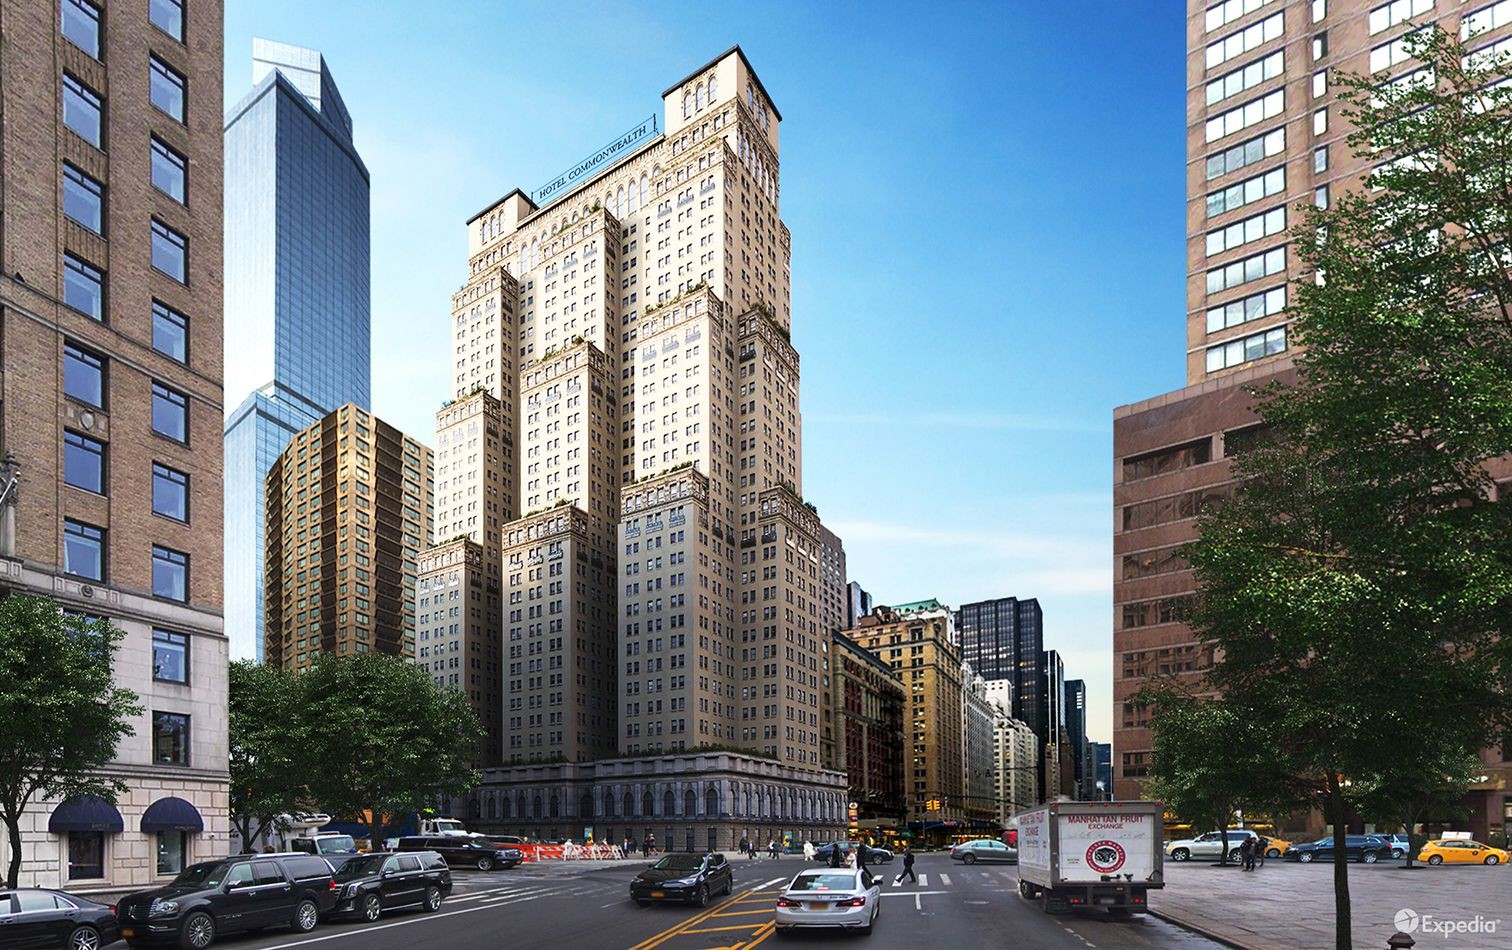 Das Projekt zum «Hotel Commonwealth» fand wegen rechtlicher und finanzieller Schwierigkeiten ein jähes Ende. Der 120 Meter hohe Bau hätte zudem einen ganzen Block am Broadway eingenommen, wie die Visualisierung von Expedia verdeutlicht.